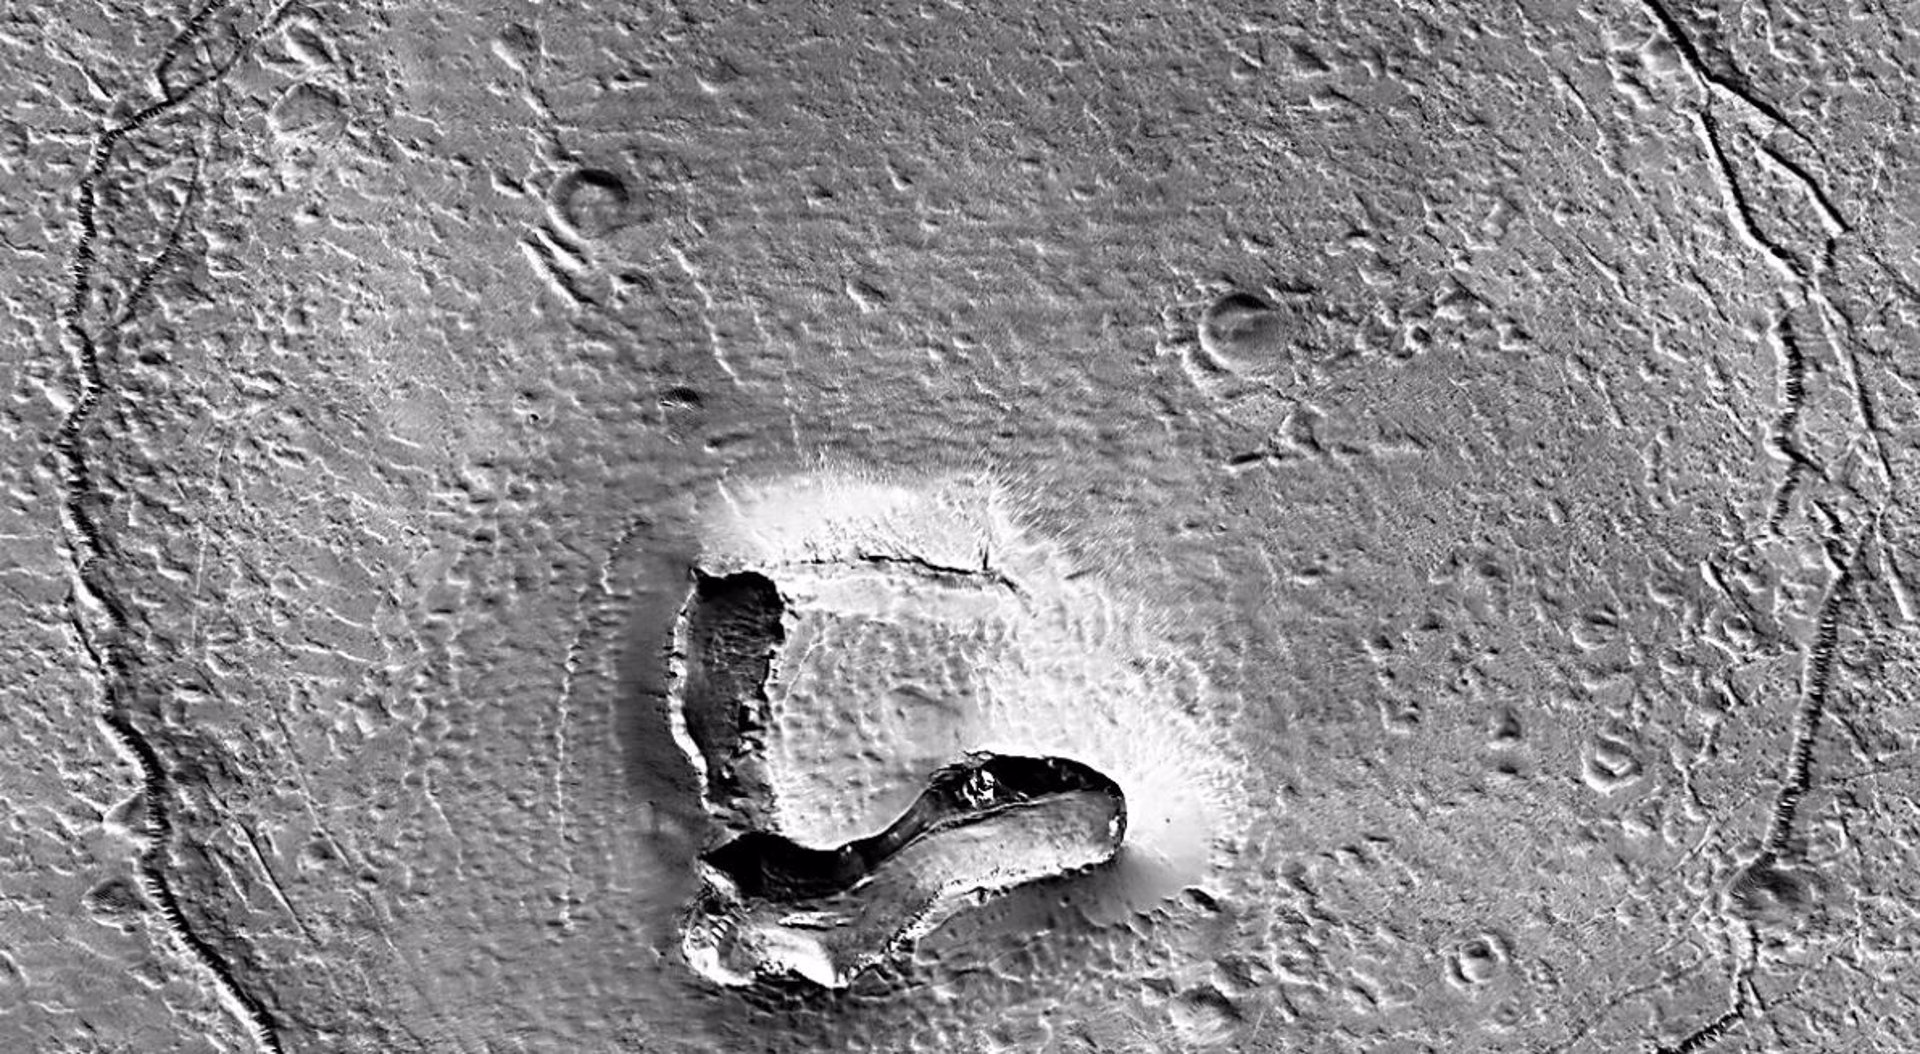 La cara de un oso en la superficie de Marte.